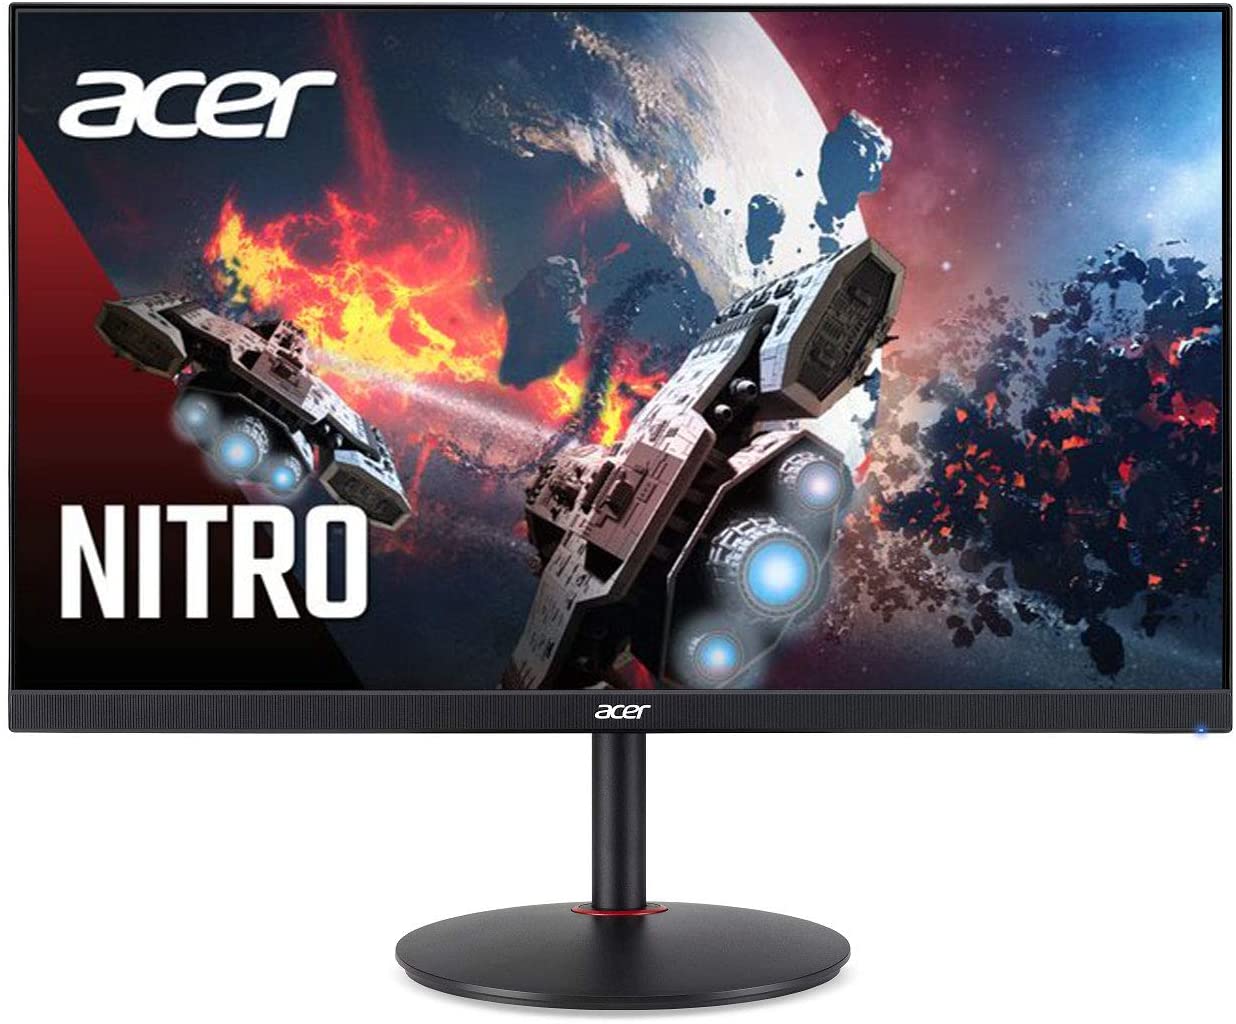 Acer Nitro XV272UX 1440p 240hz Monitor